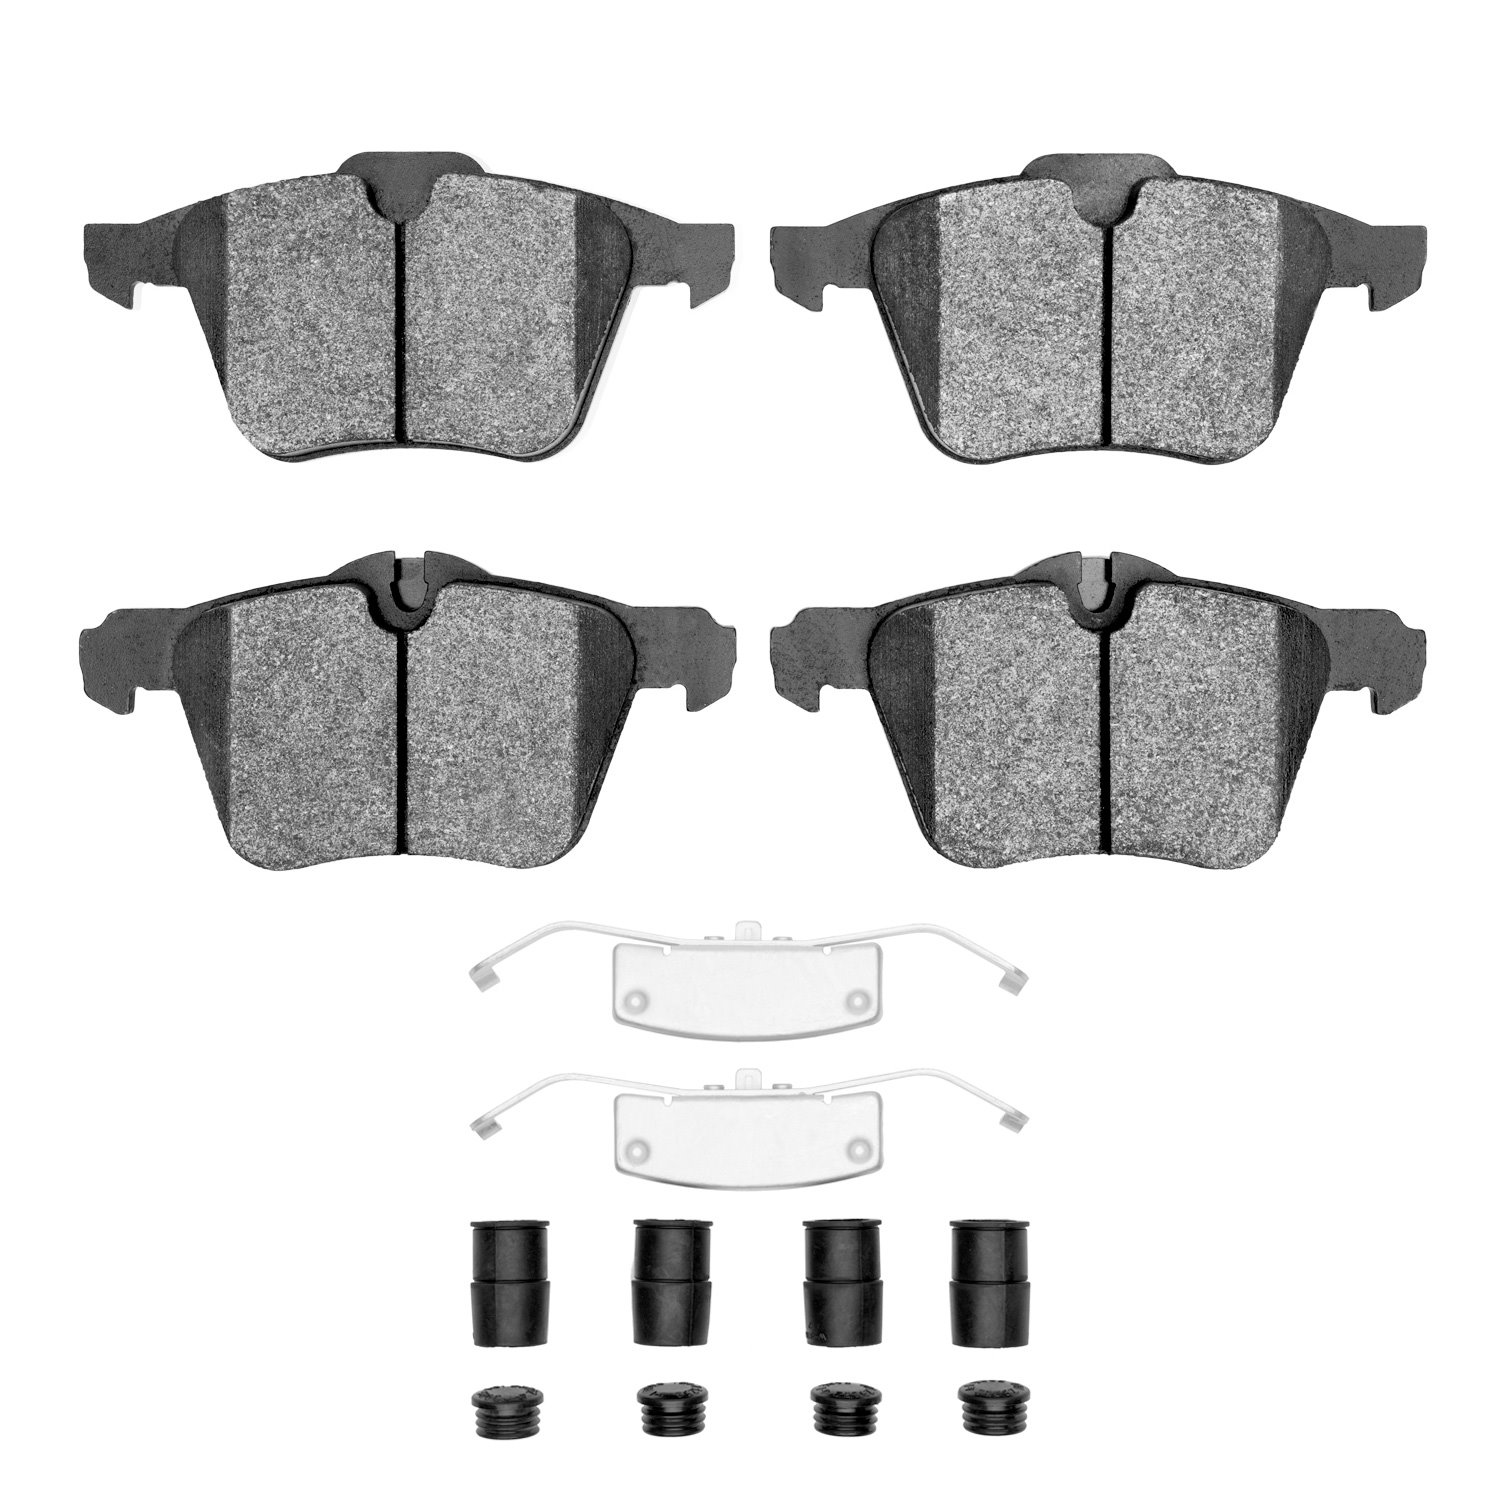 Semi-Metallic Brake Pads & Hardware Kit, 2010-2019 Jaguar, Position: Front